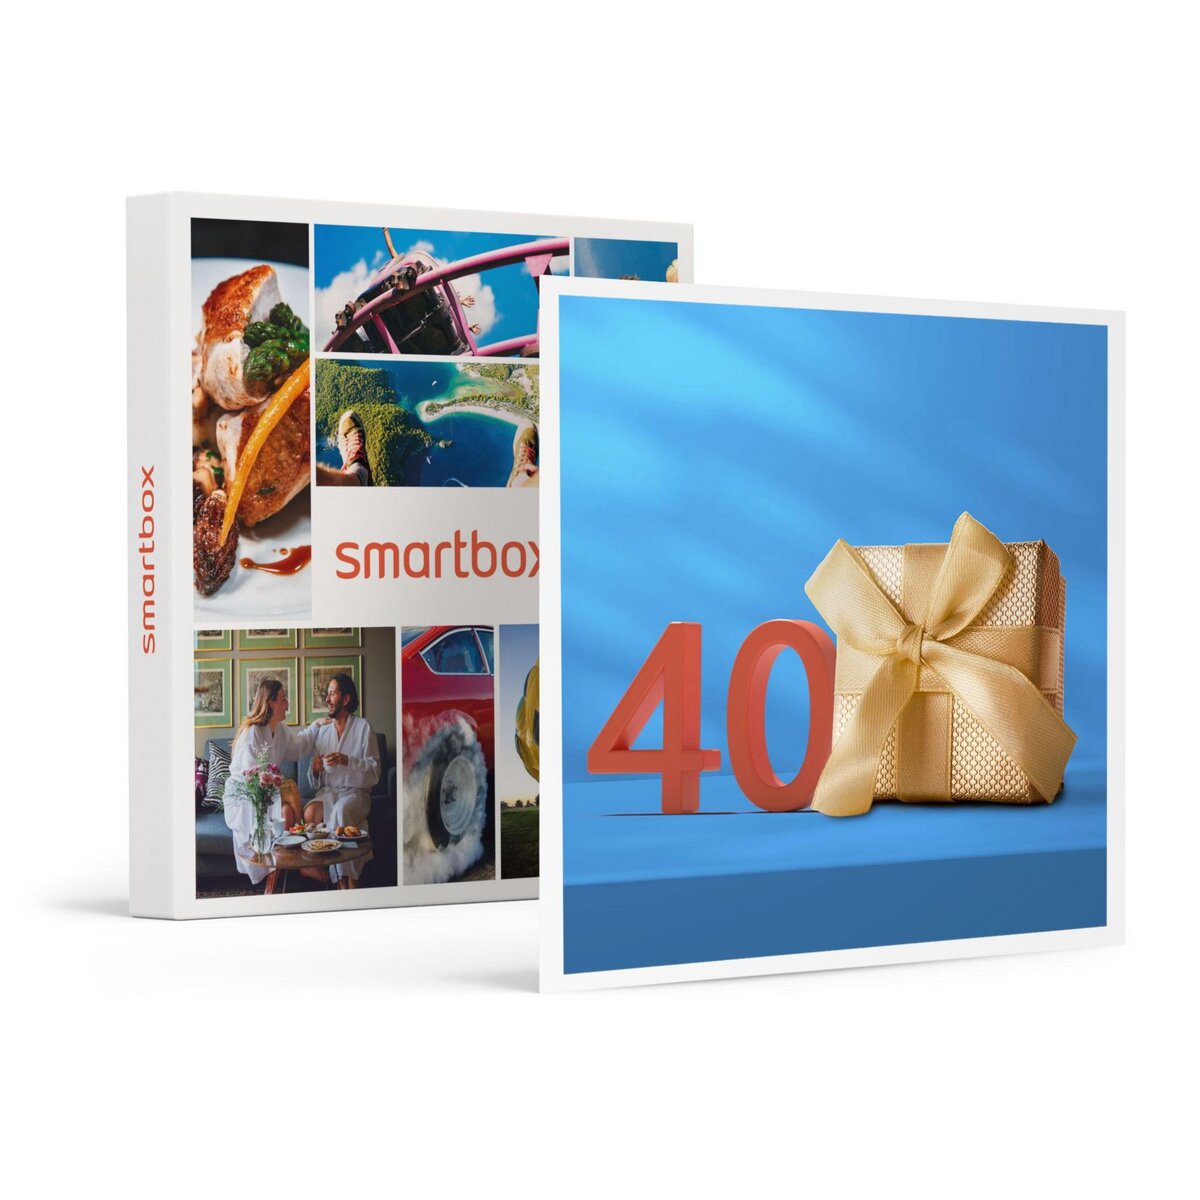 Smartbox Joyeux anniversaire ! Pour les 40 ans d'un homme - Coffret Cadeau  Multi-thèmes pas cher 